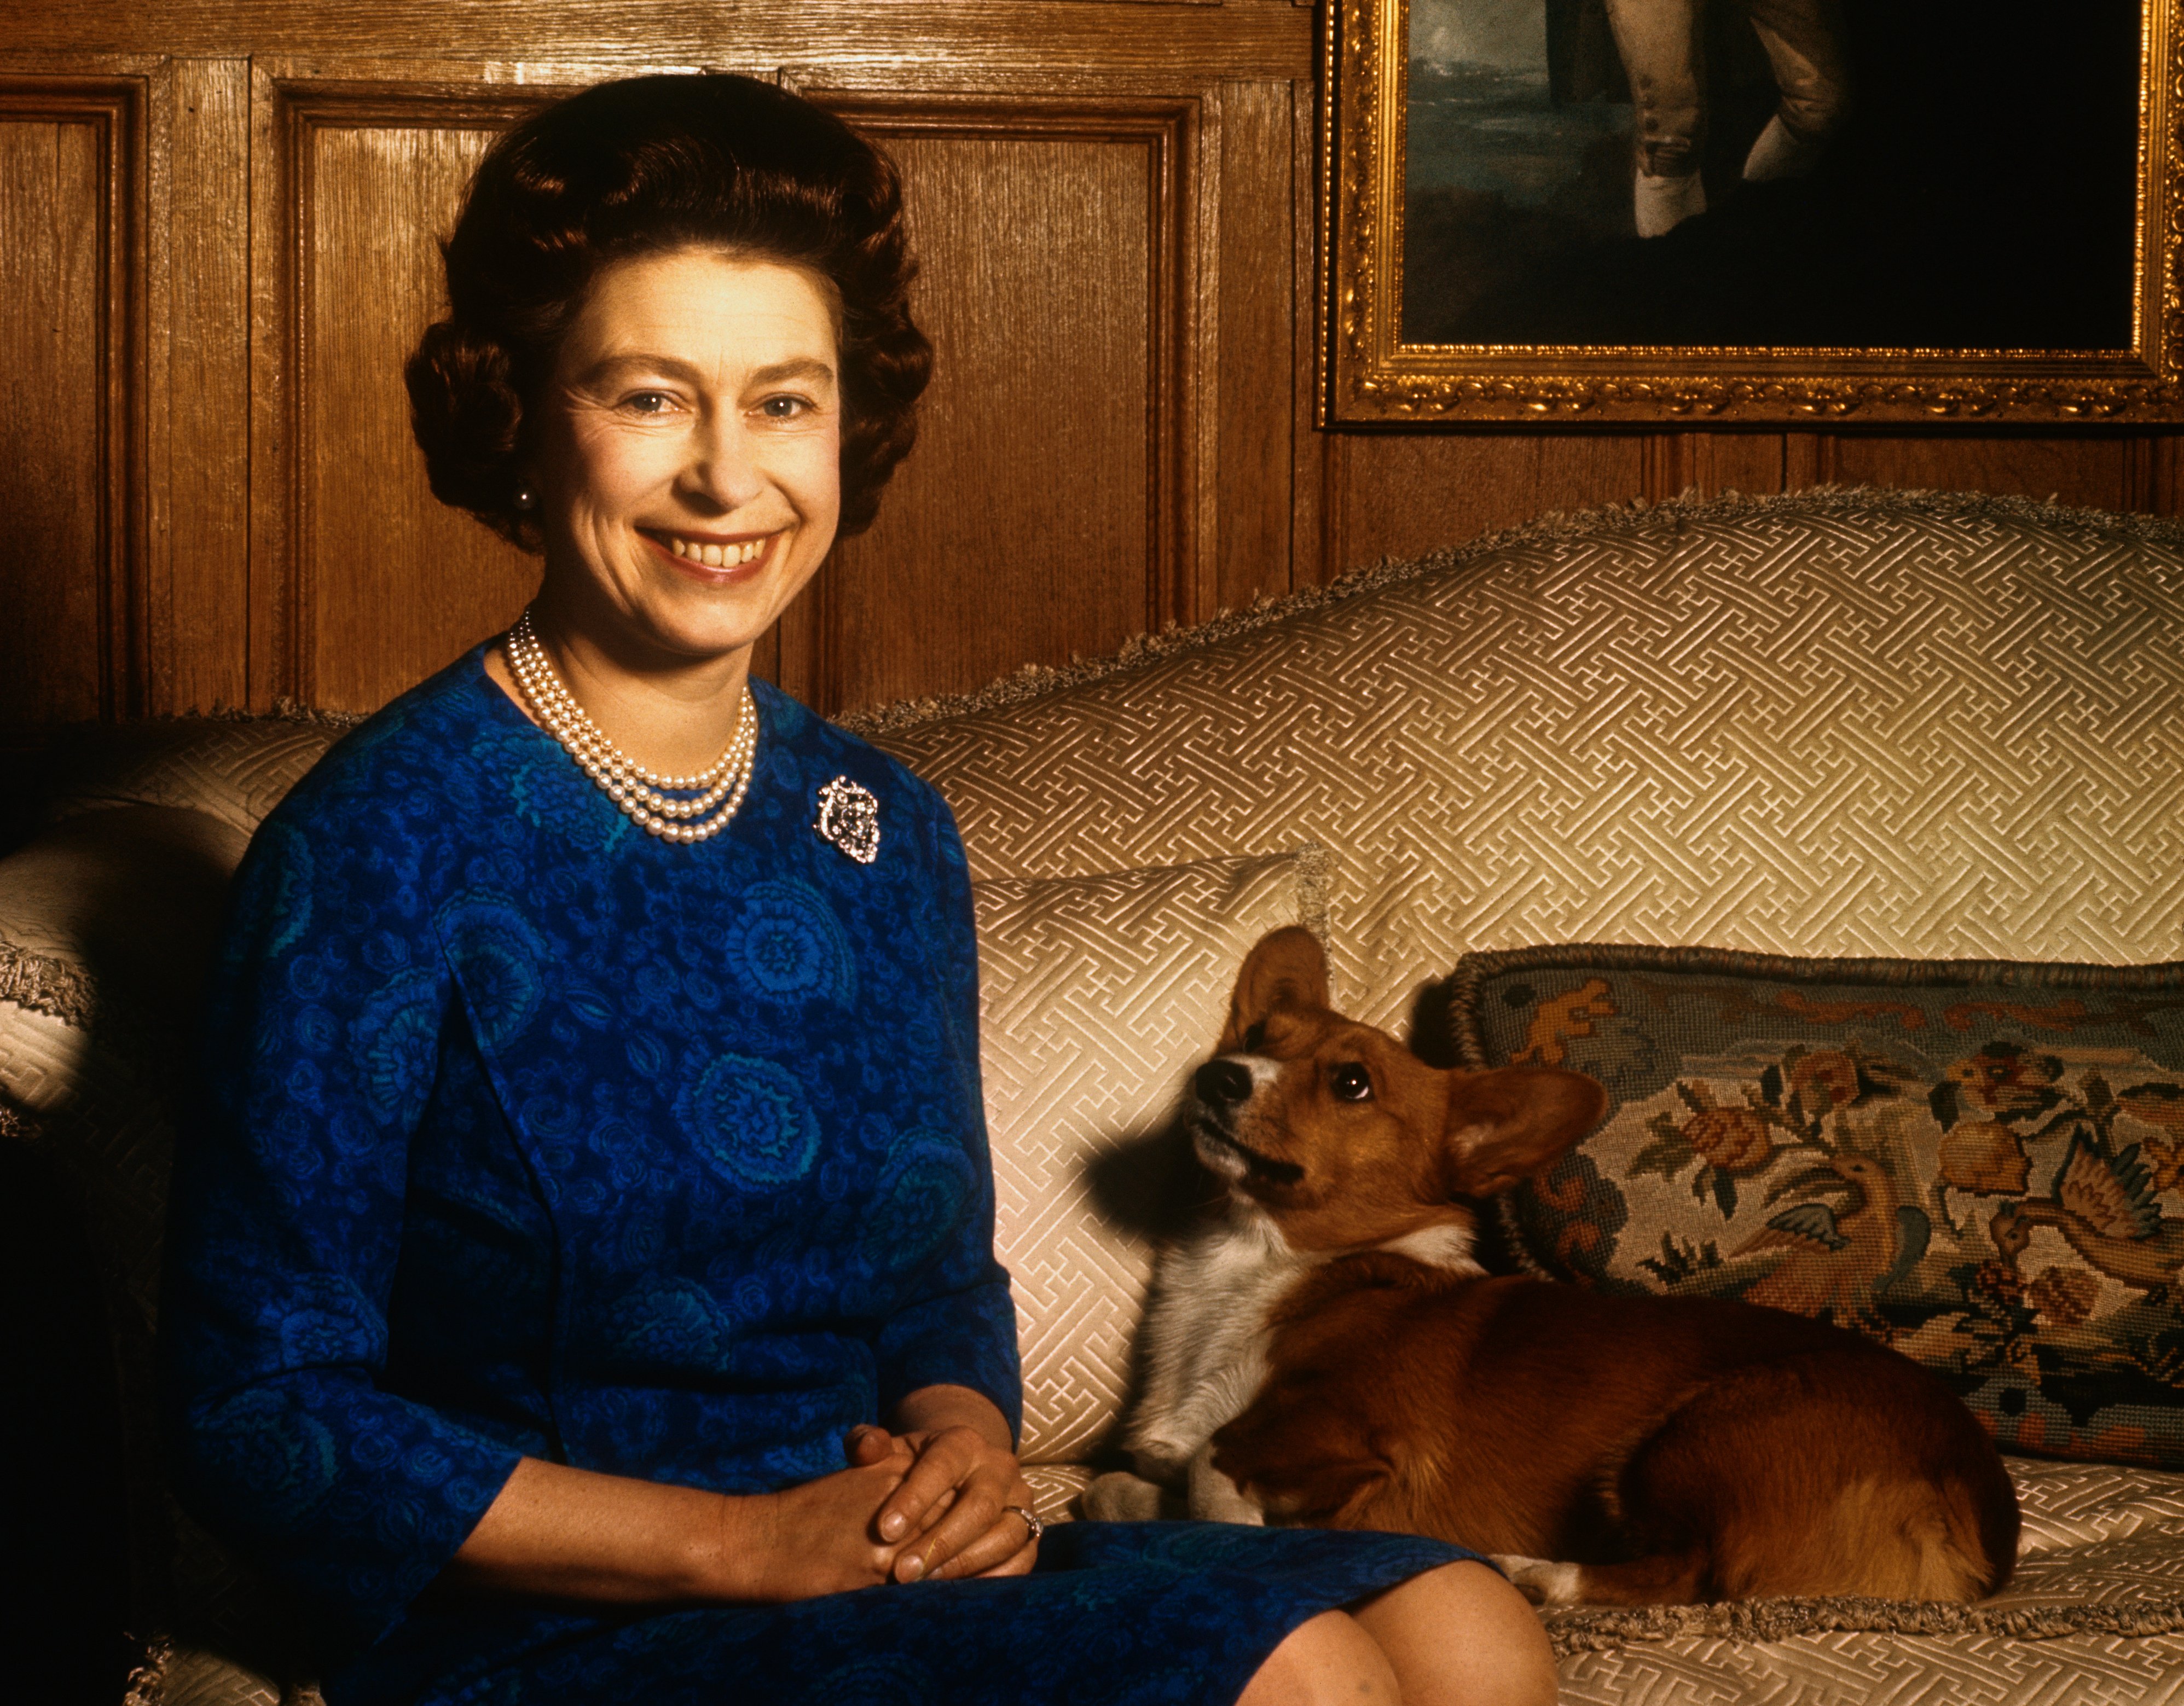 Königin Elizabeth II neben ihrem Hund während einer Fotosession im Salon des Sandringham House. | Quelle: Getty Images